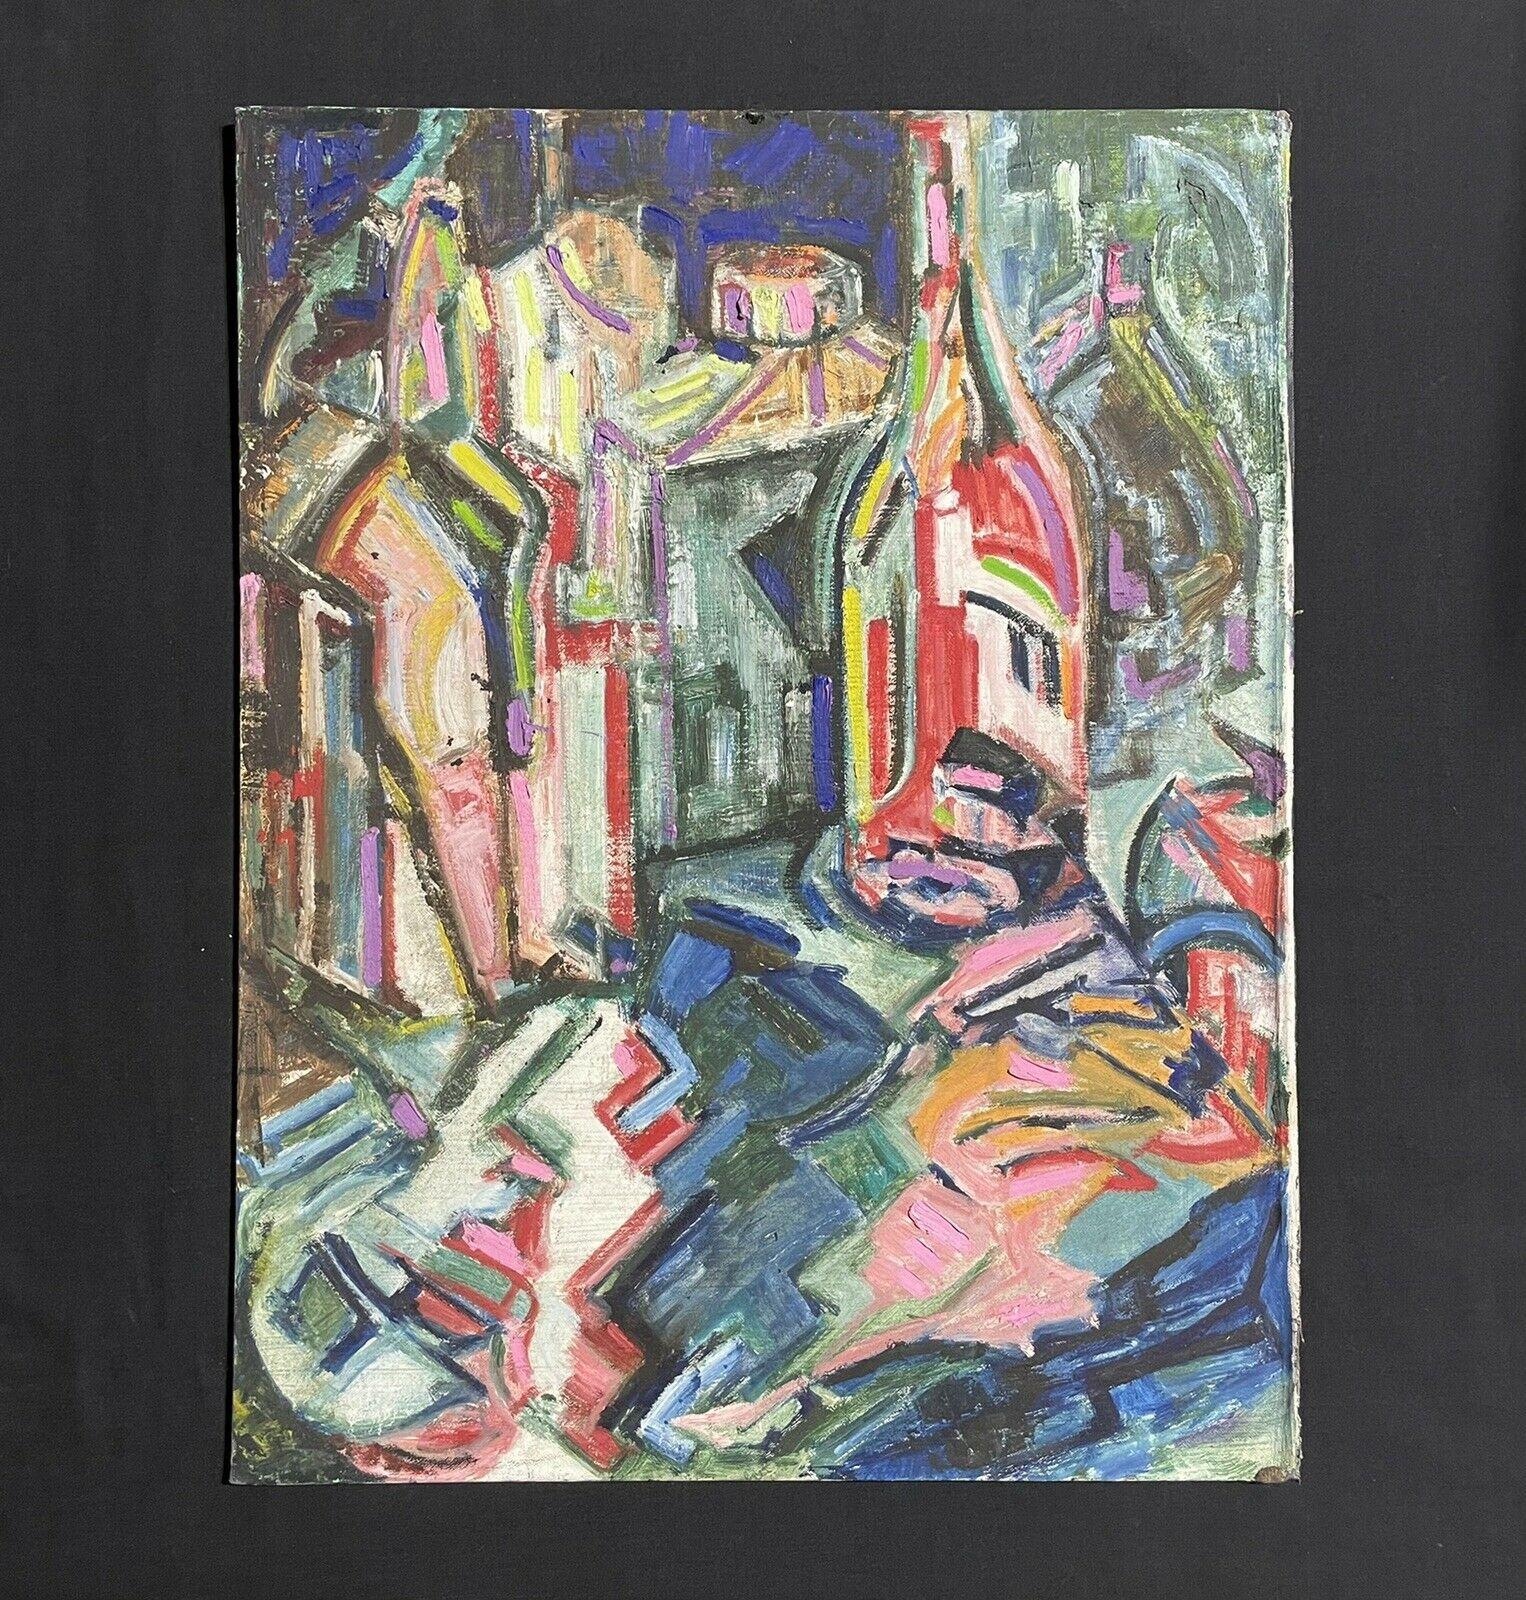 LAURIE NORMAN (1927-2019) GROSSES ÖL - ABSTRAKTE KUBISTISCHE ANSICHT VON GEBÄUDEN/STADT – Painting von Laurie Norman